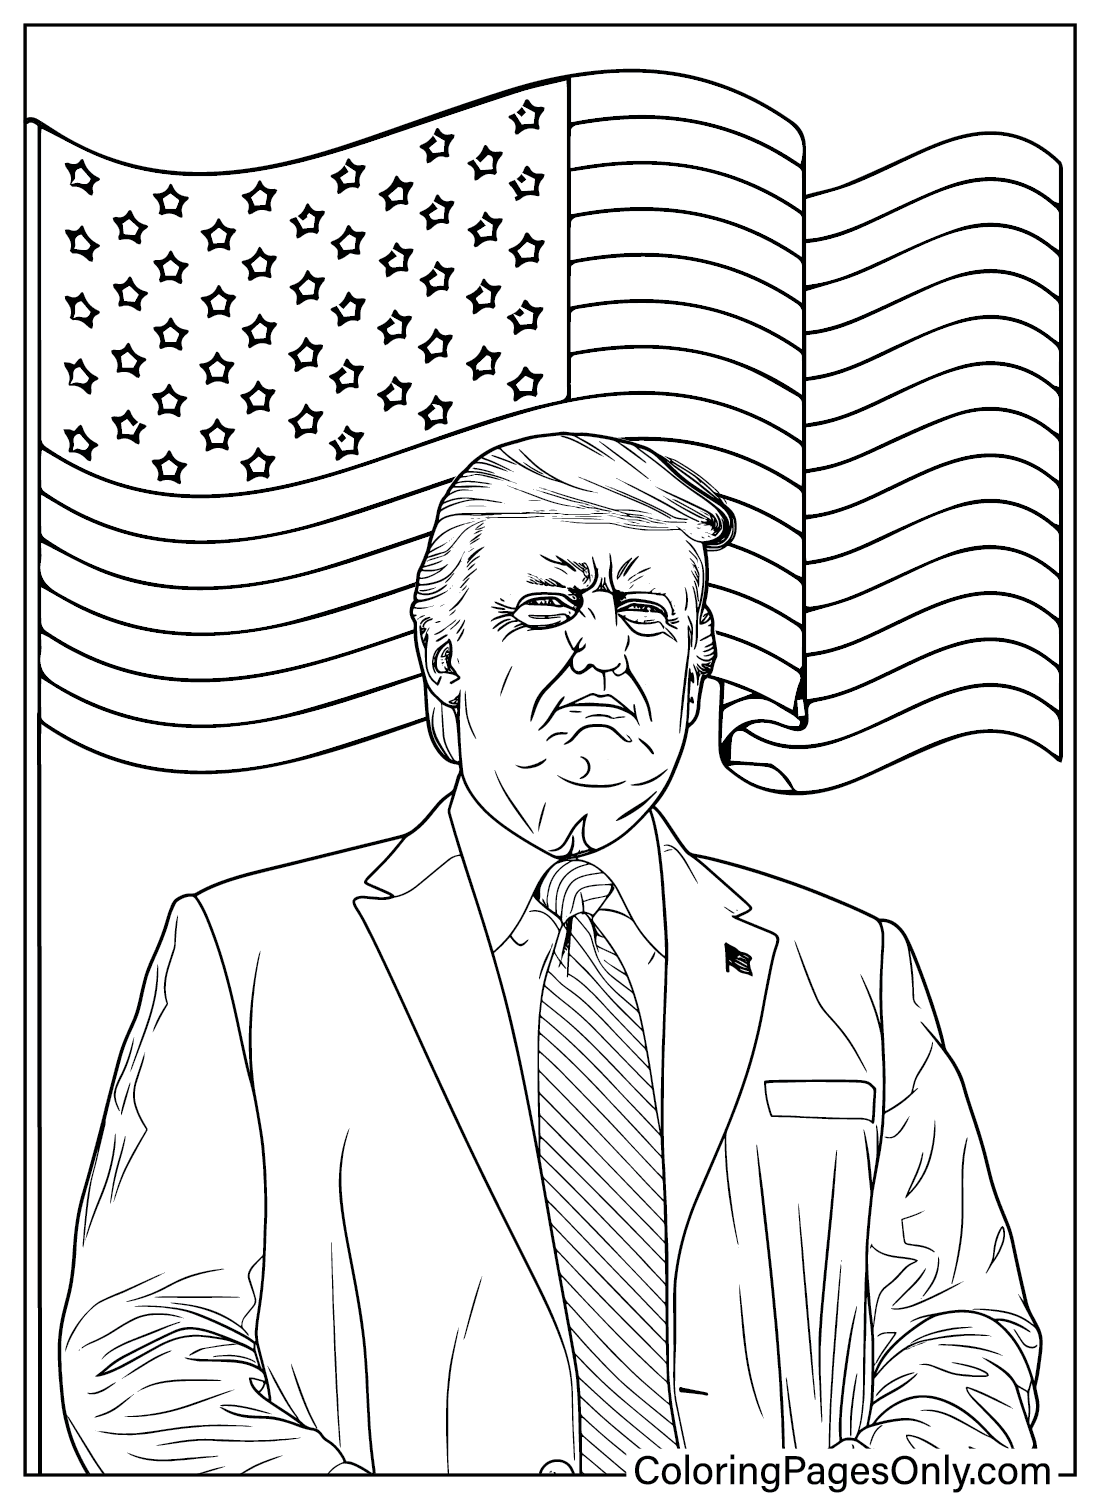 Image de Donald Trump à colorier de Donald Trump